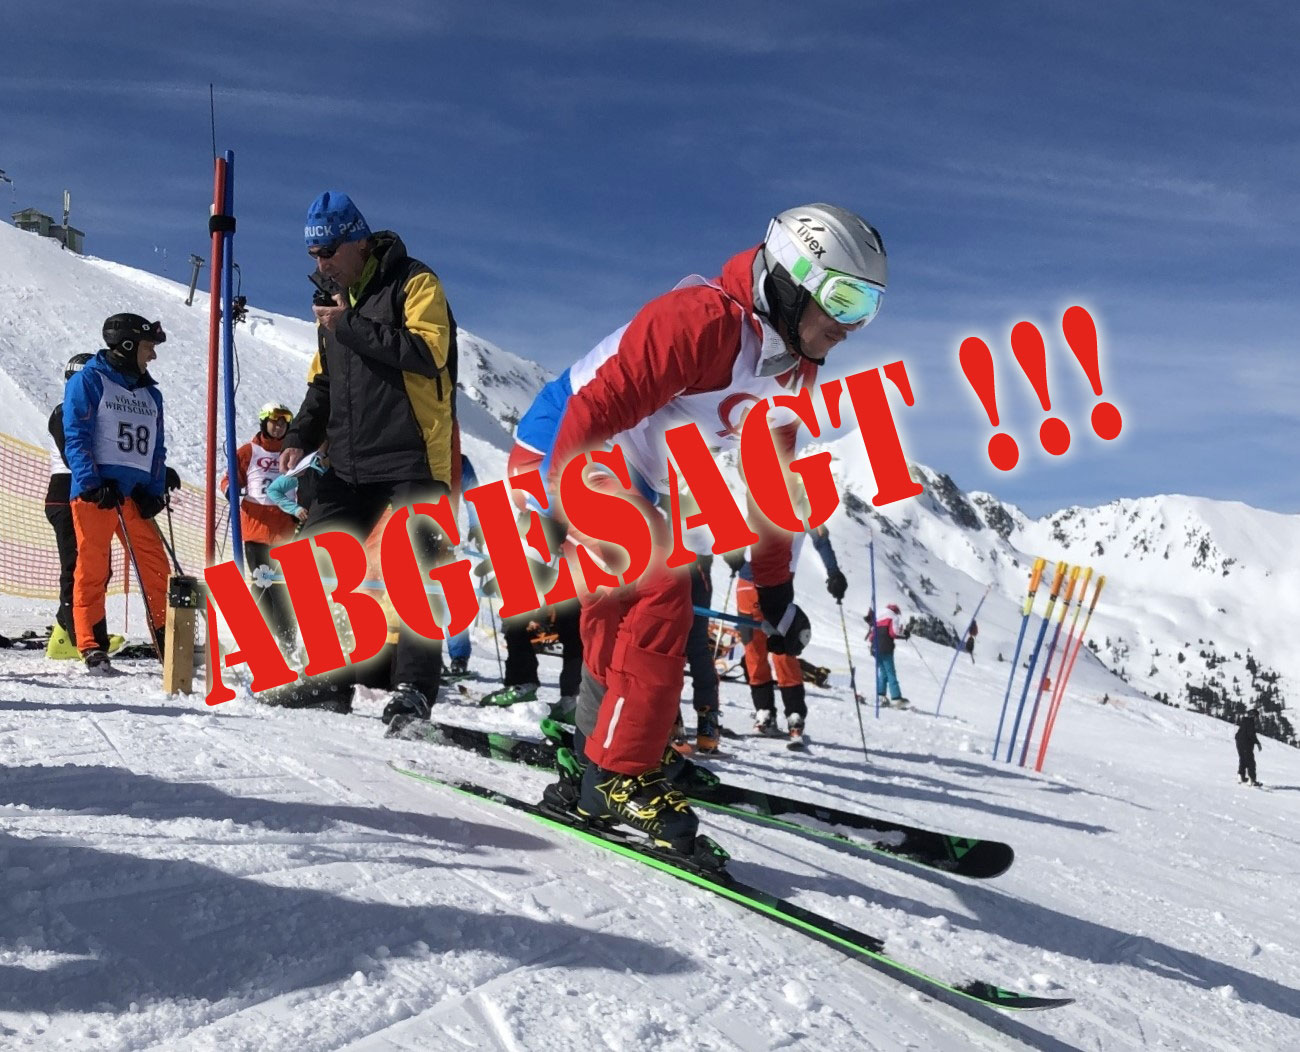 Marktgemeindemeisterschaft 2020  Alpinschi und Snowboard – ABGESAGT!!!